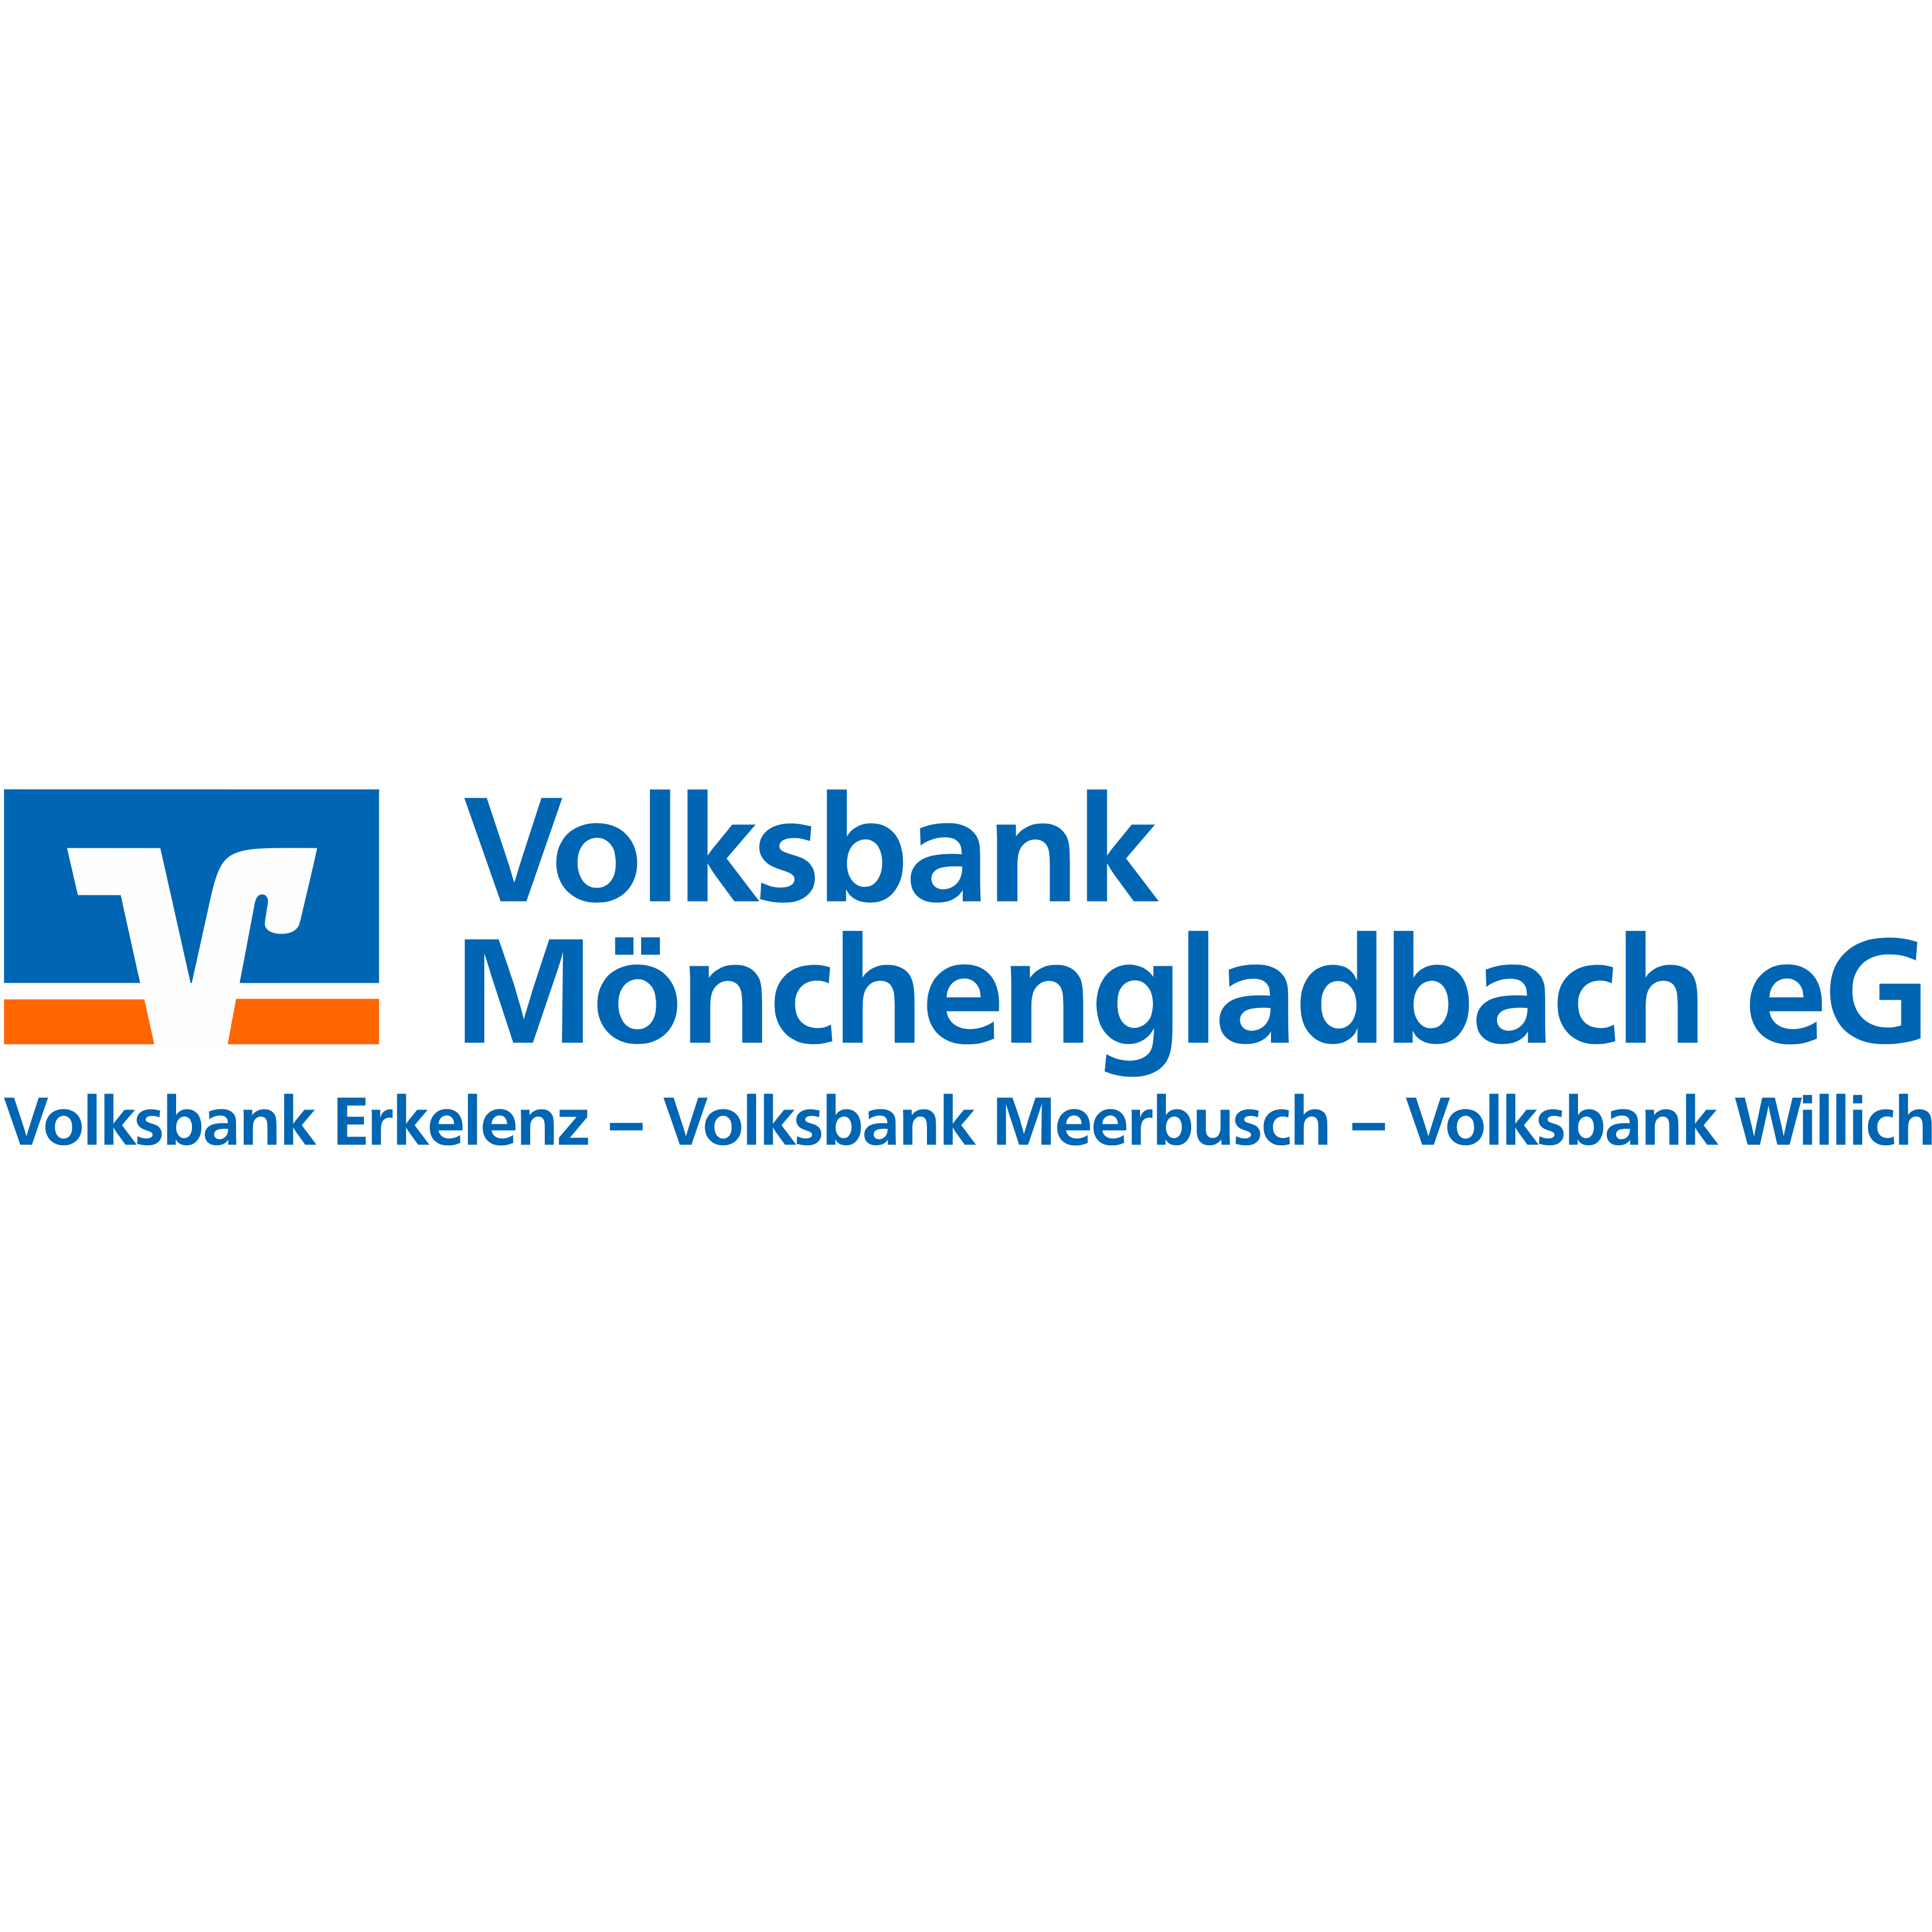 Volksbank Mönchengladbach eG - BeratungsCenter Neuwerk  